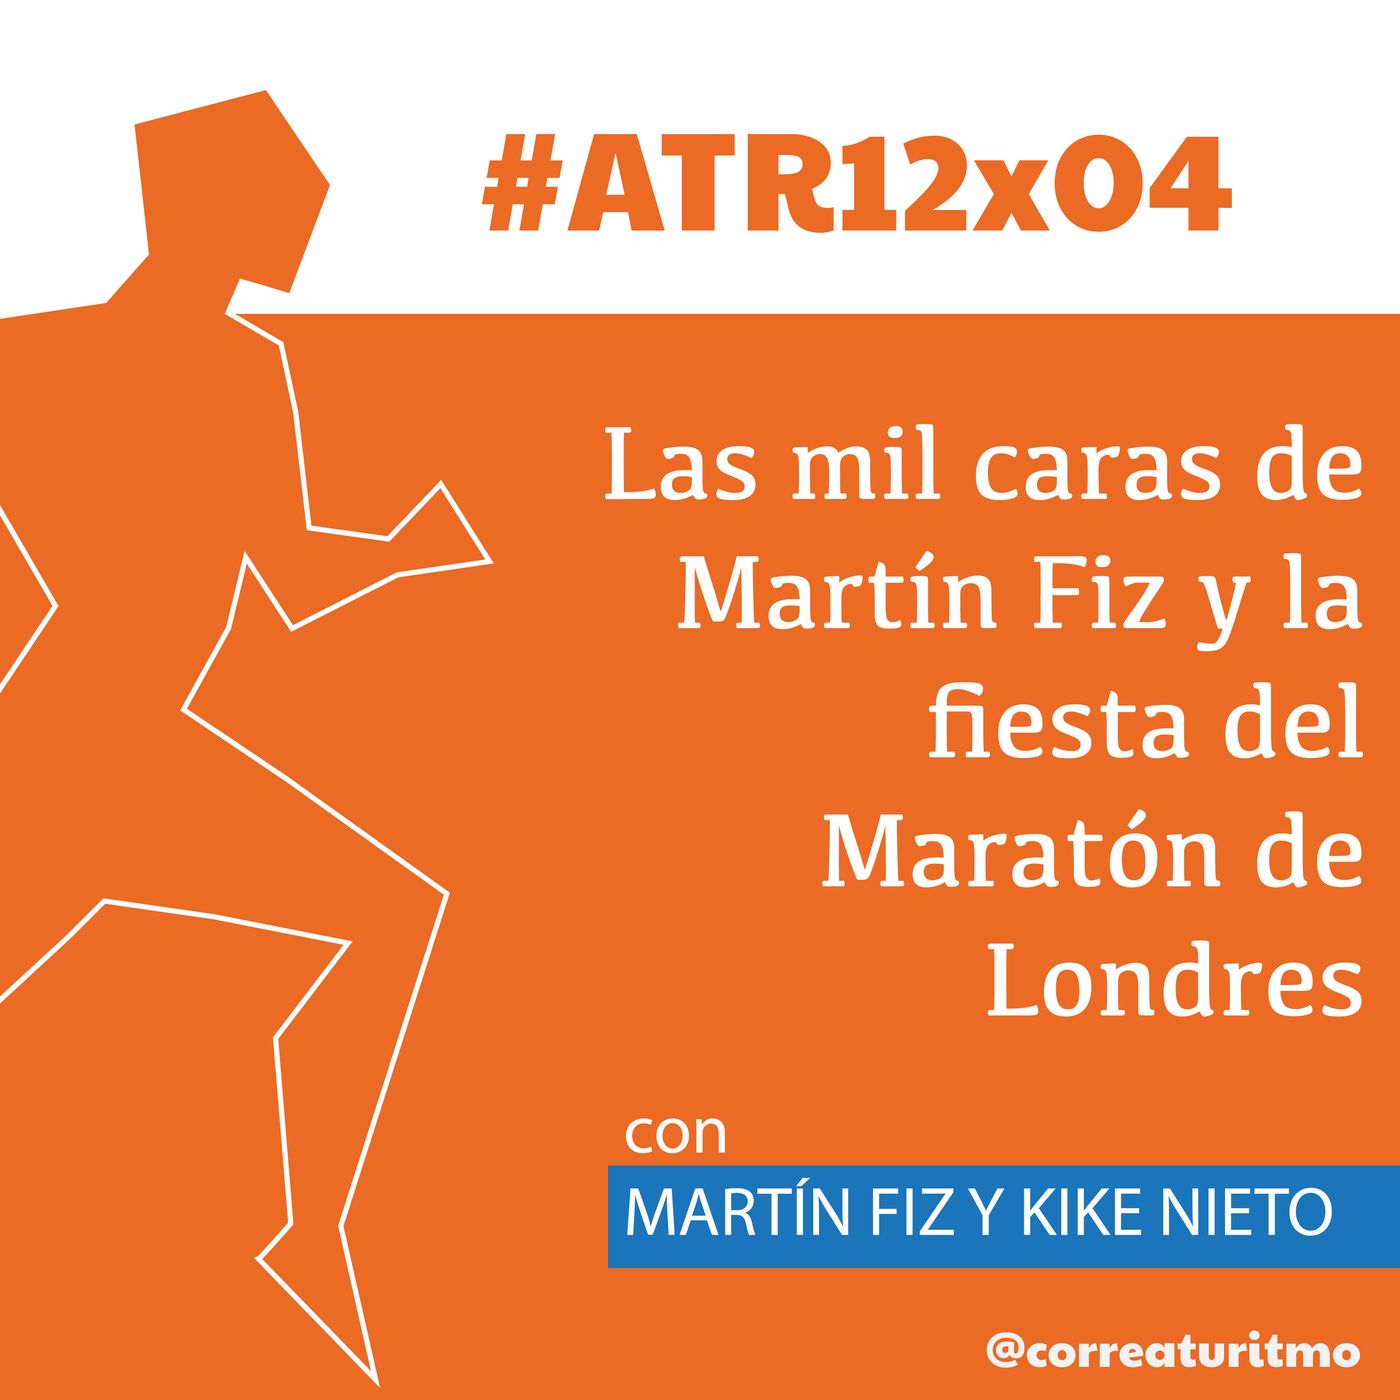 ATR 12x04 - Todas las caras de Martín Fiz y la fiesta del running en Londres